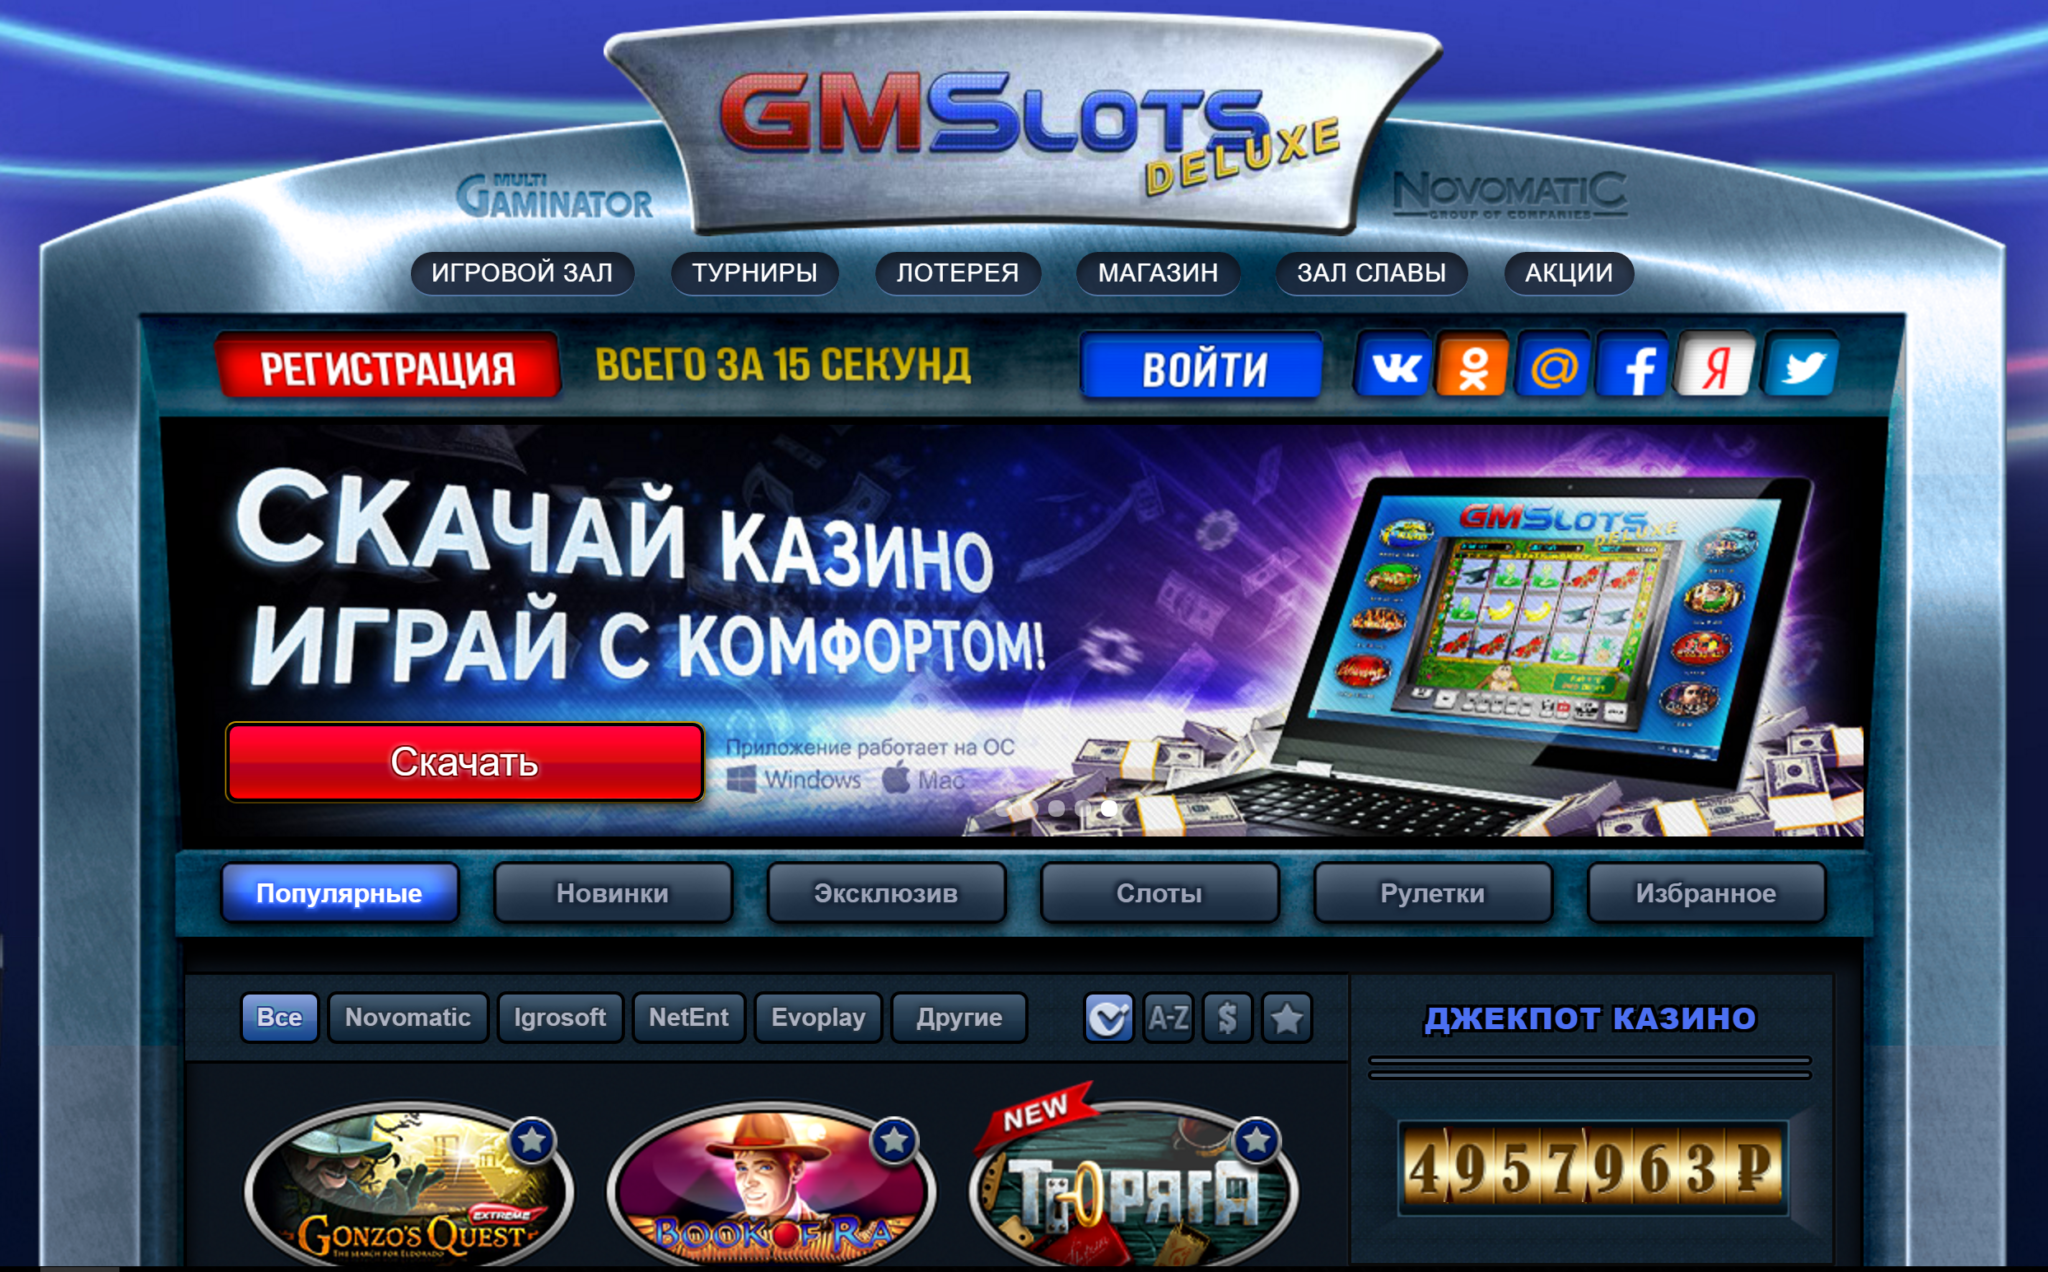 Сайт casino deluxe. Игровые автоматы gmslots. Игровые автоматы Делюкс. Казино GMS-Deluxe. Игровые автоматы Gaminator Deluxe.